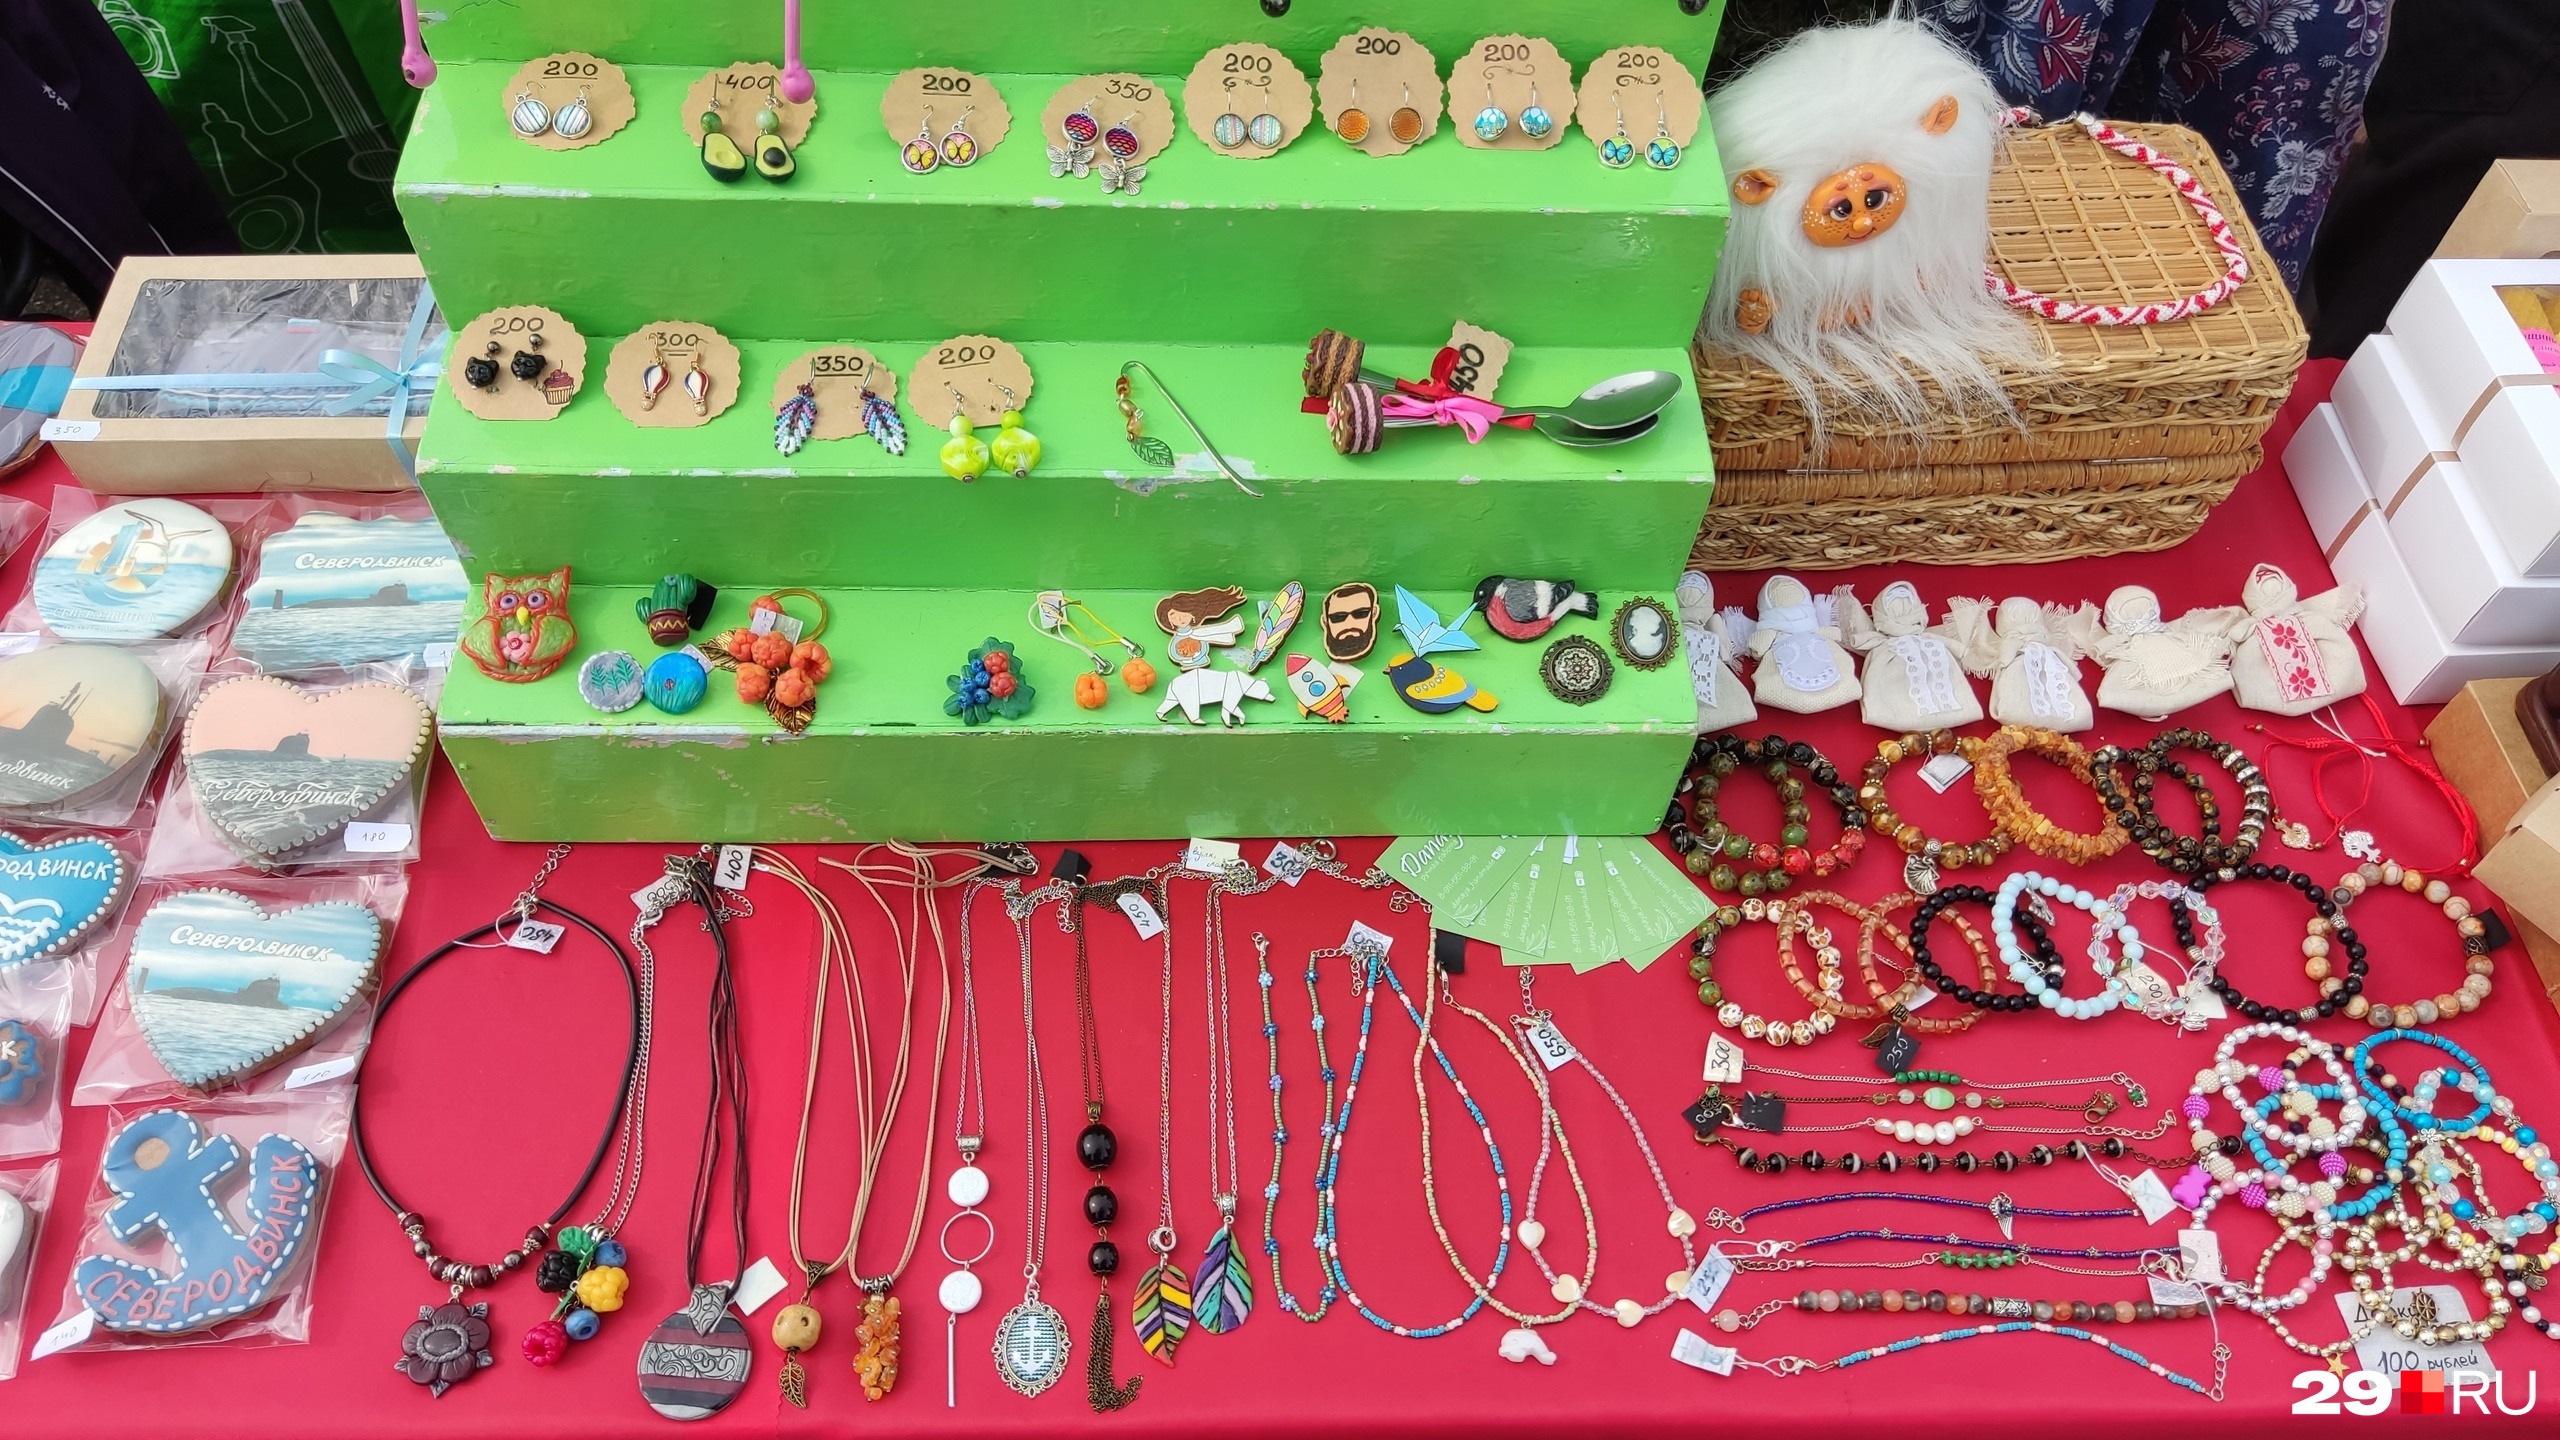 Значки, серьги, браслеты и бусы — разброс цен от 100 до 650 рублей